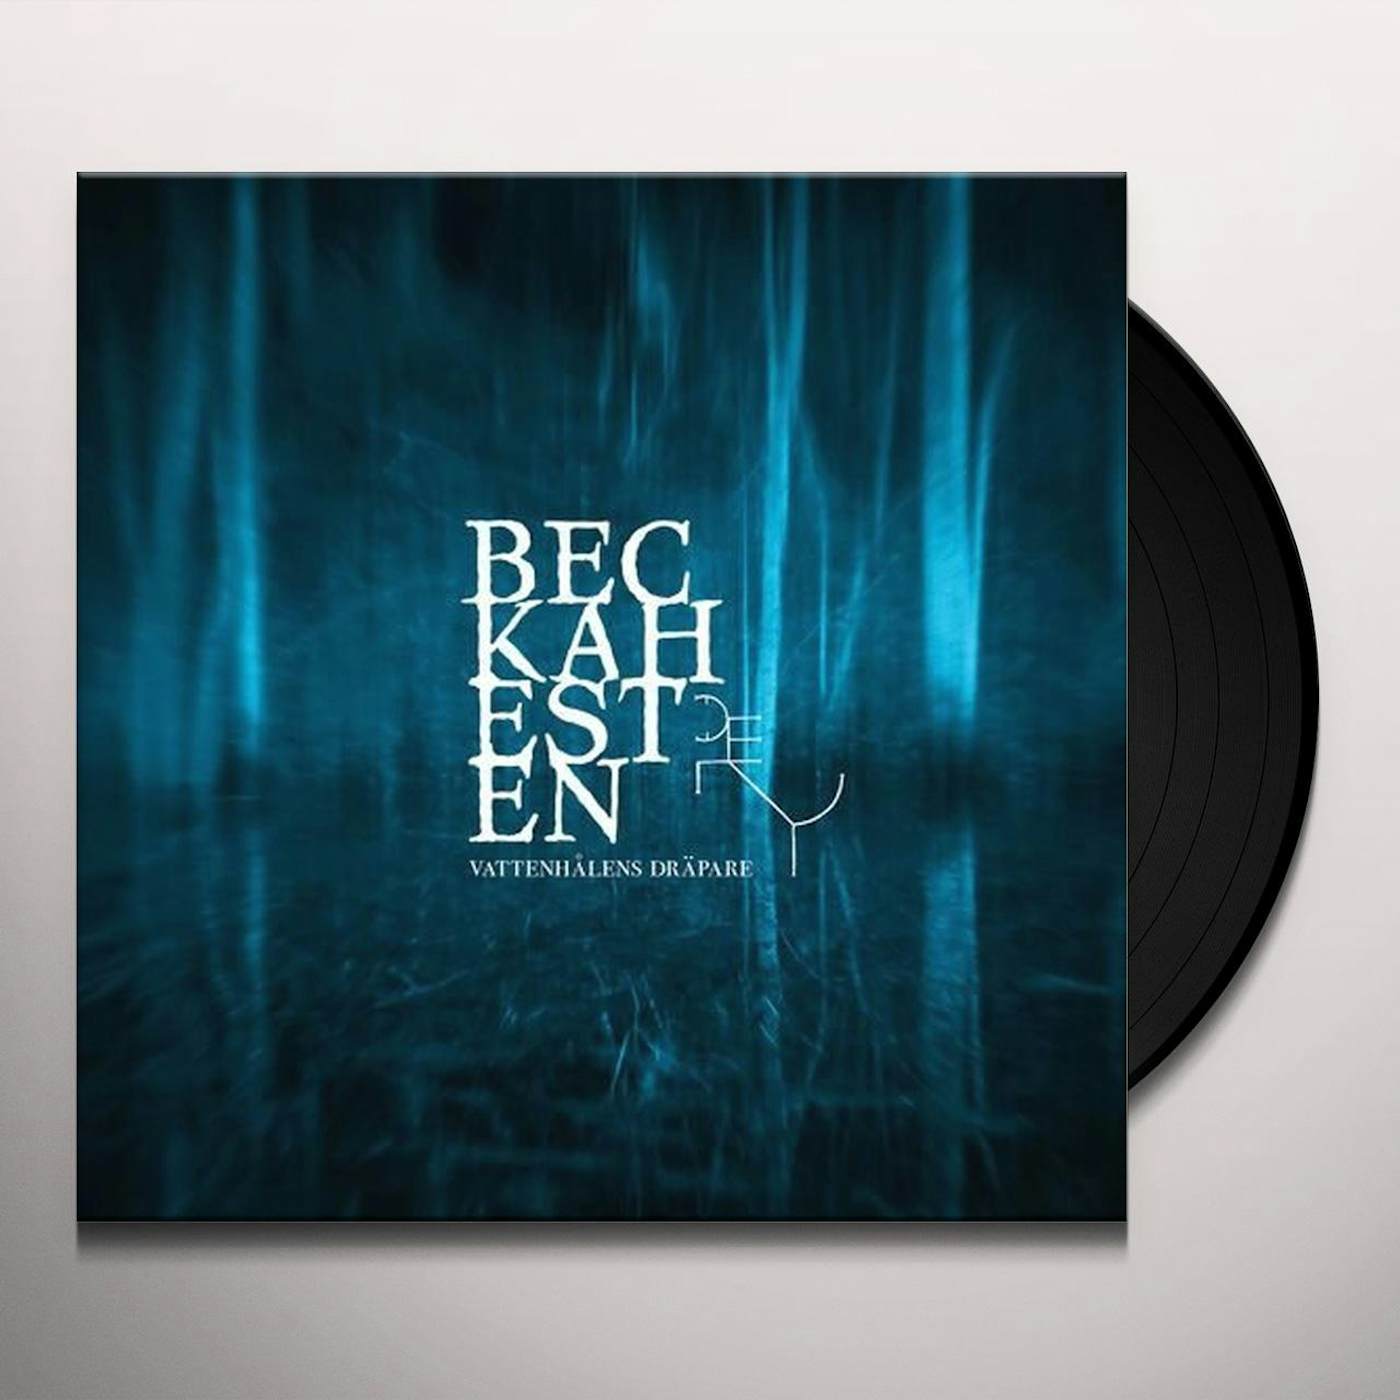 Beckahesten VATTENHALENS DRAPARE Vinyl Record